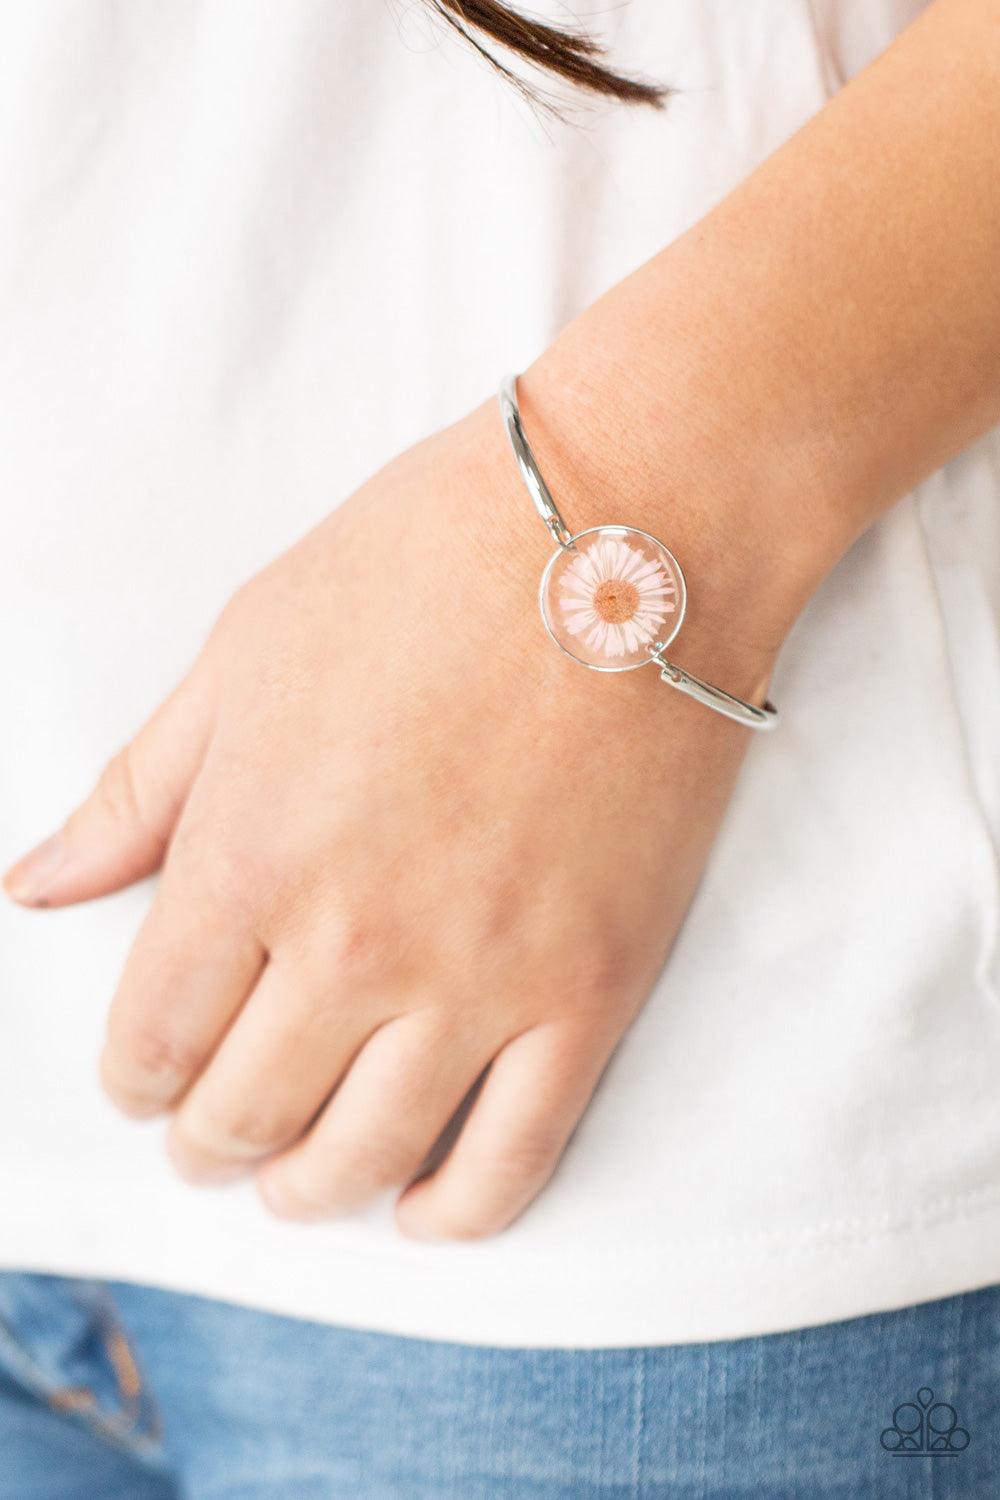 Cottage Season Pink Bracelet - Jewelry by Bretta